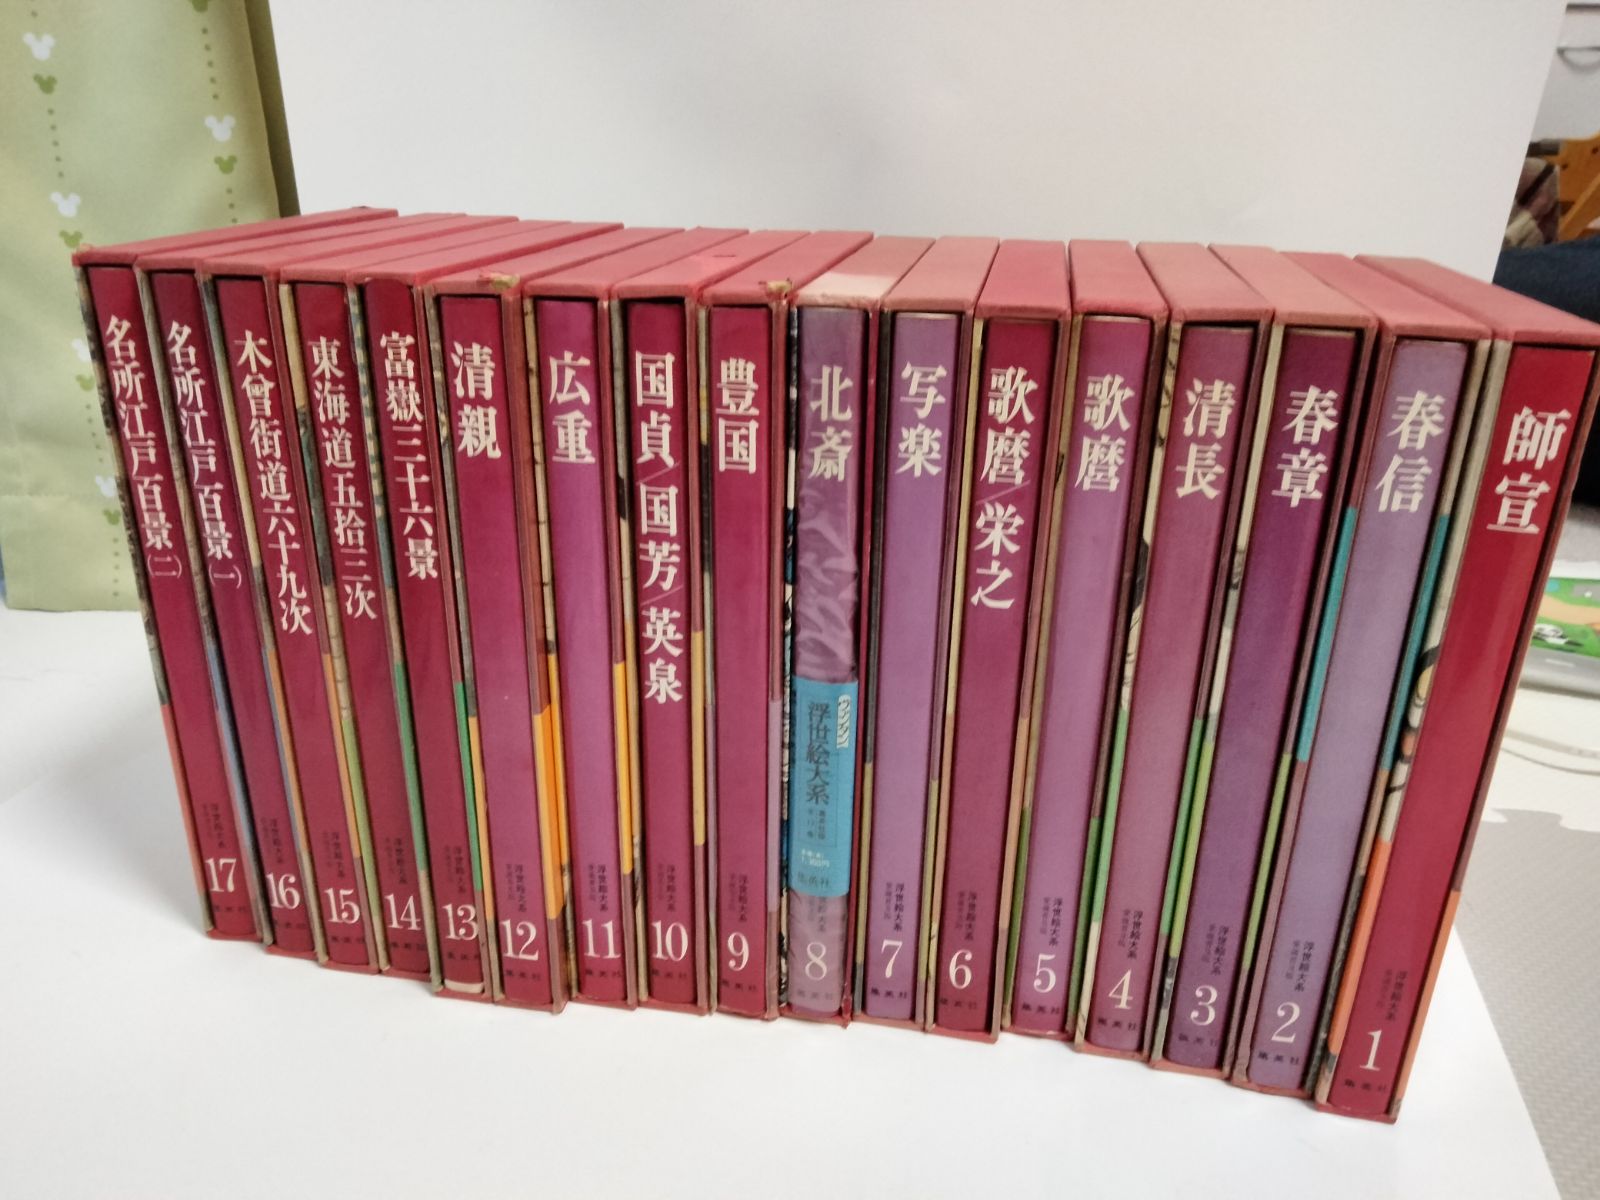 ヴァンタン 浮世絵大系 集英社版 全17巻 - メルカリ